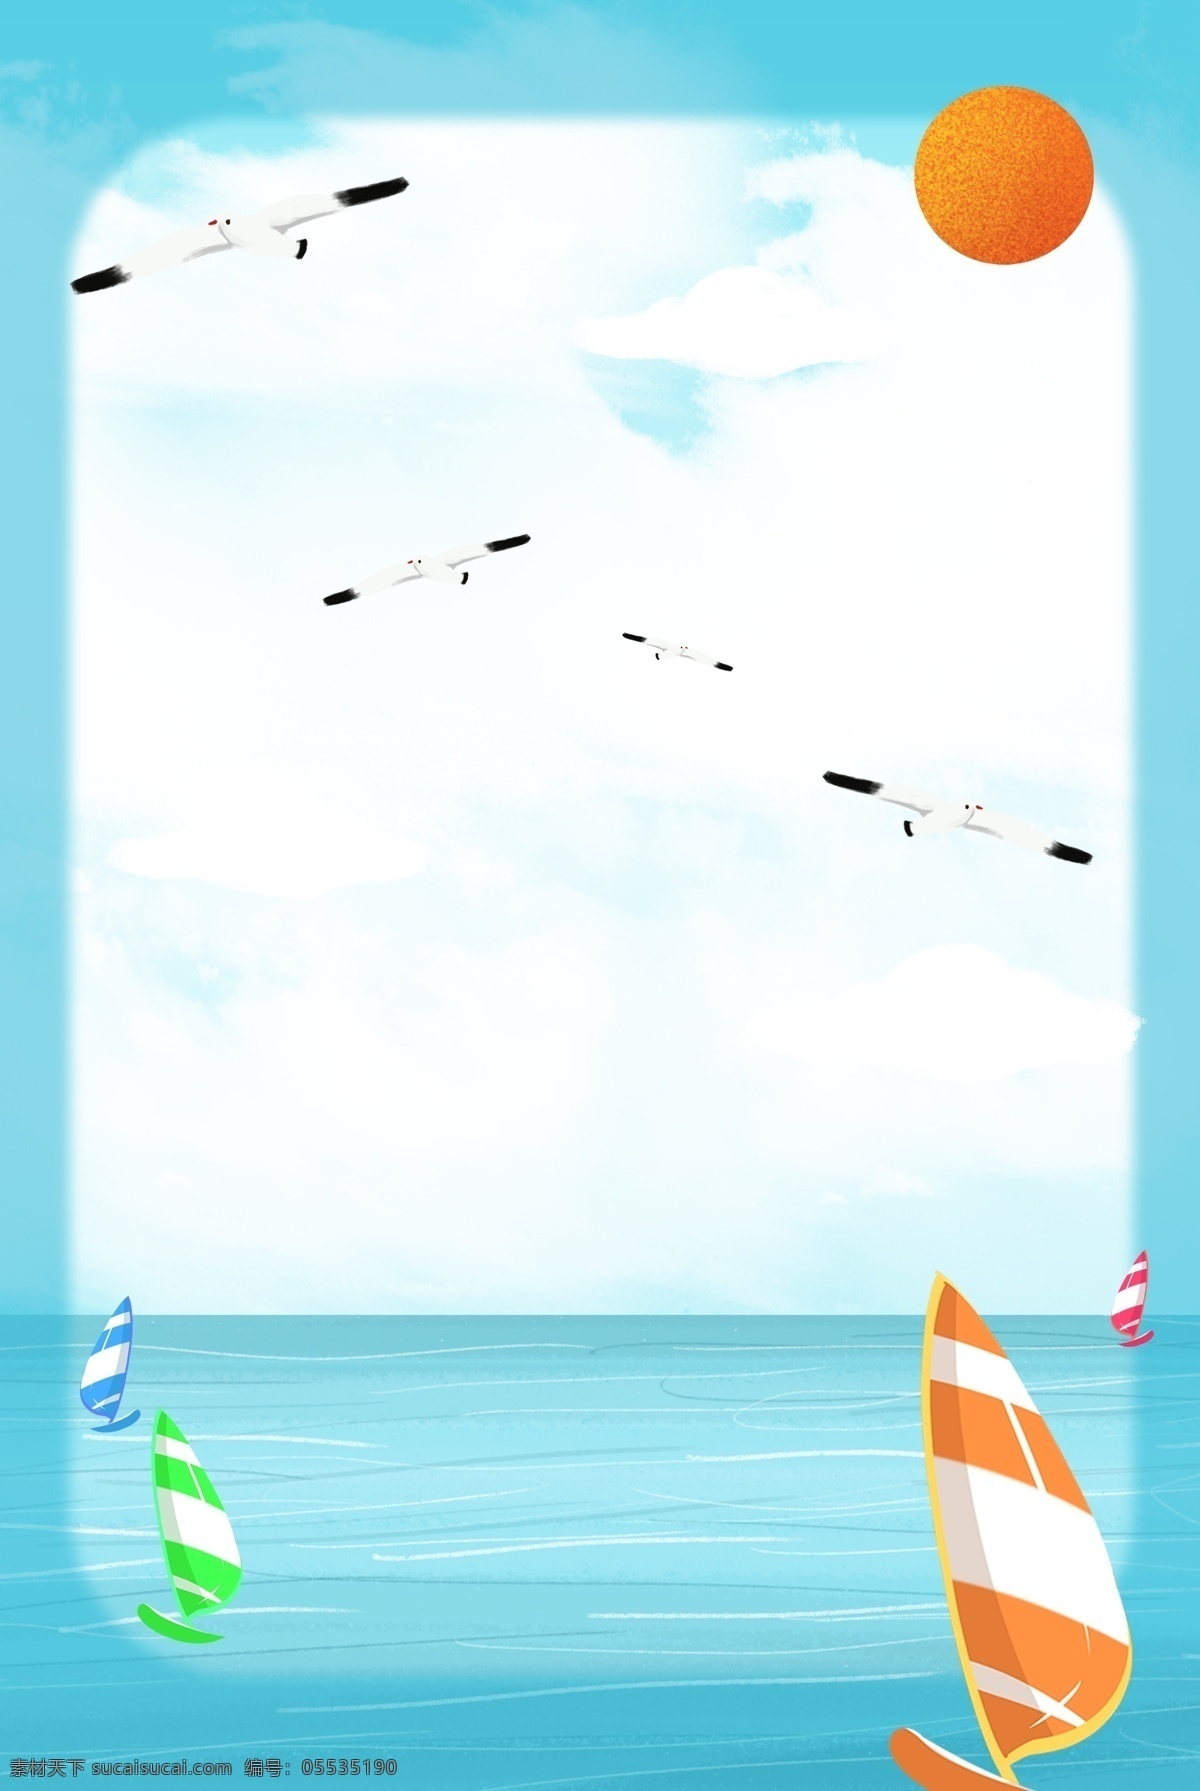 海面 上 比赛 帆船 夏日 景点 清凉 海边 大海 景色 美景 天空 蓝天白云 放松 休闲 海鸥 船 太阳